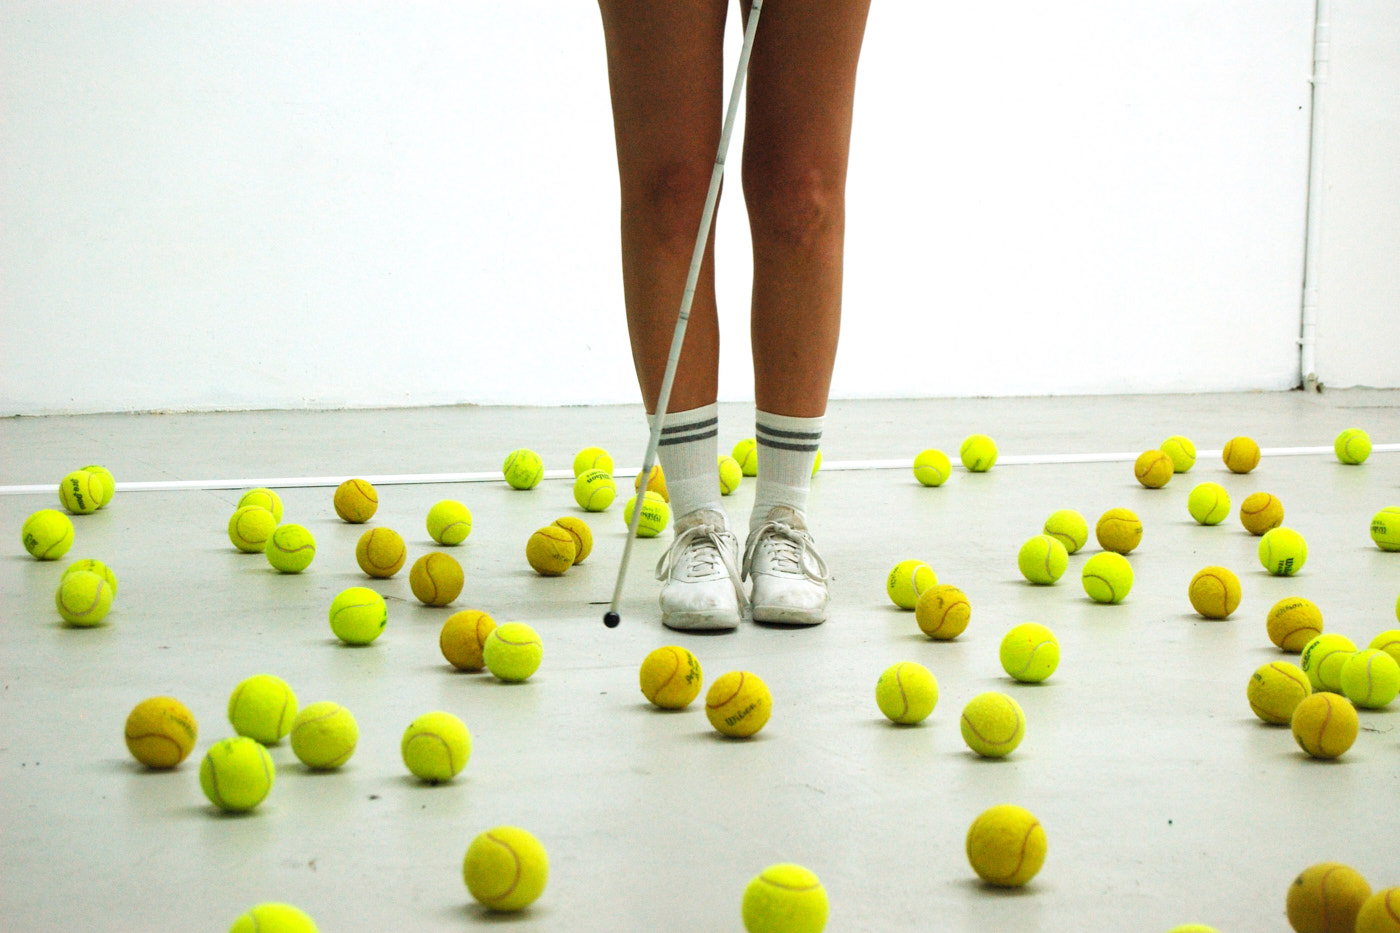 Die Beine einer Person. Sie trägt weiße Schuhe und Tennissocken, und einen weißen Stock. Um sie herum liegen viele gelbe Tennisbälle auf dem Boden.